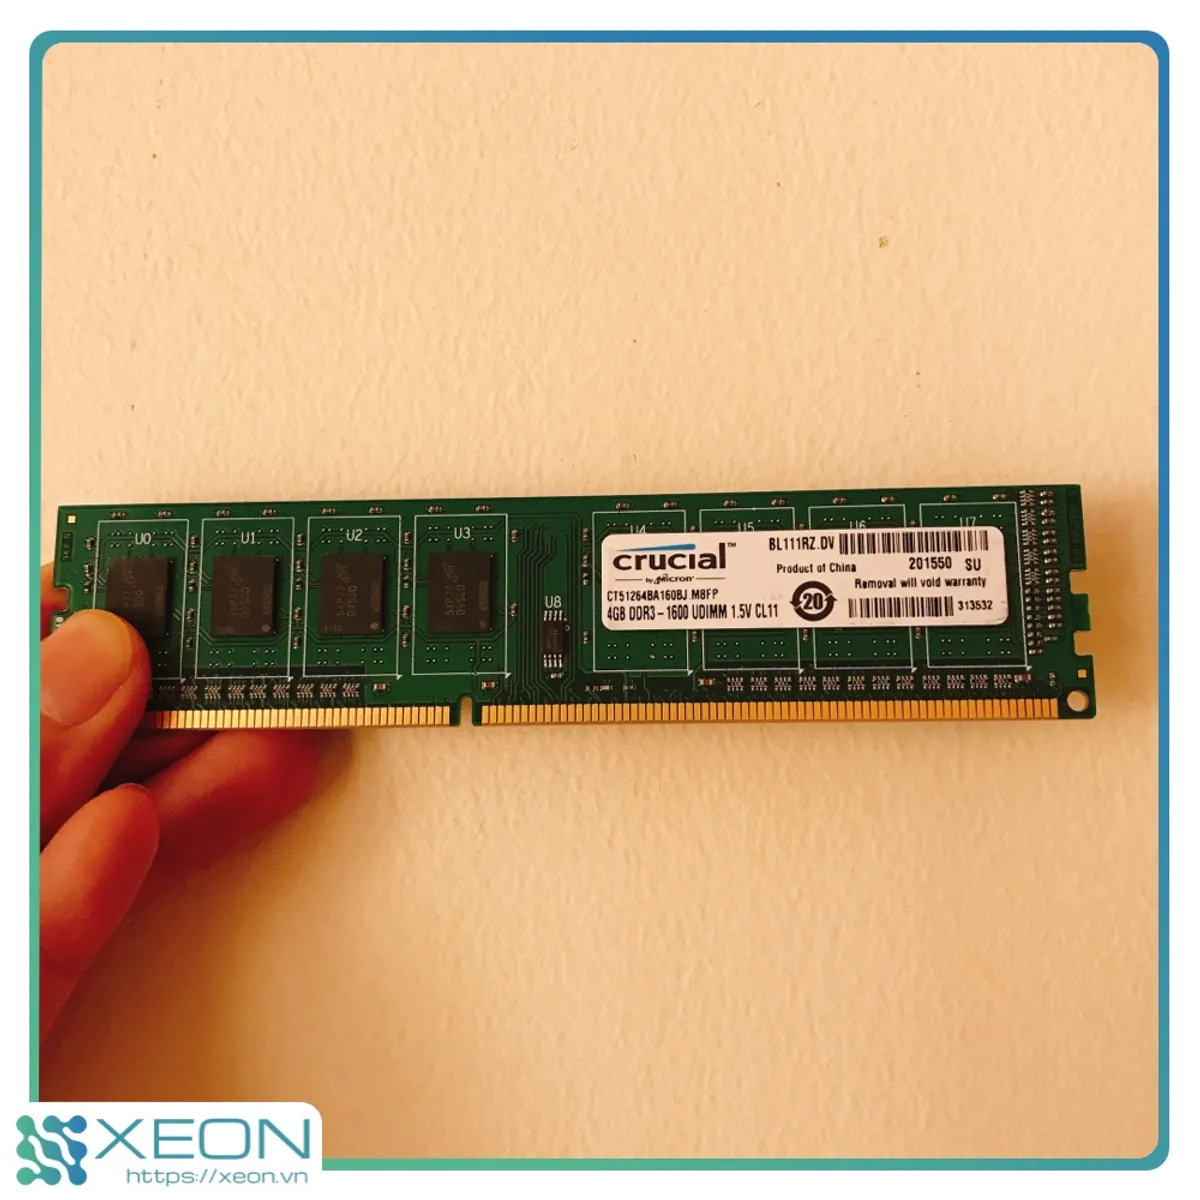 Crucial Micron製 DDR3L ノート用メモリー 8GB 1600MT s PC3-12800 CL11 204